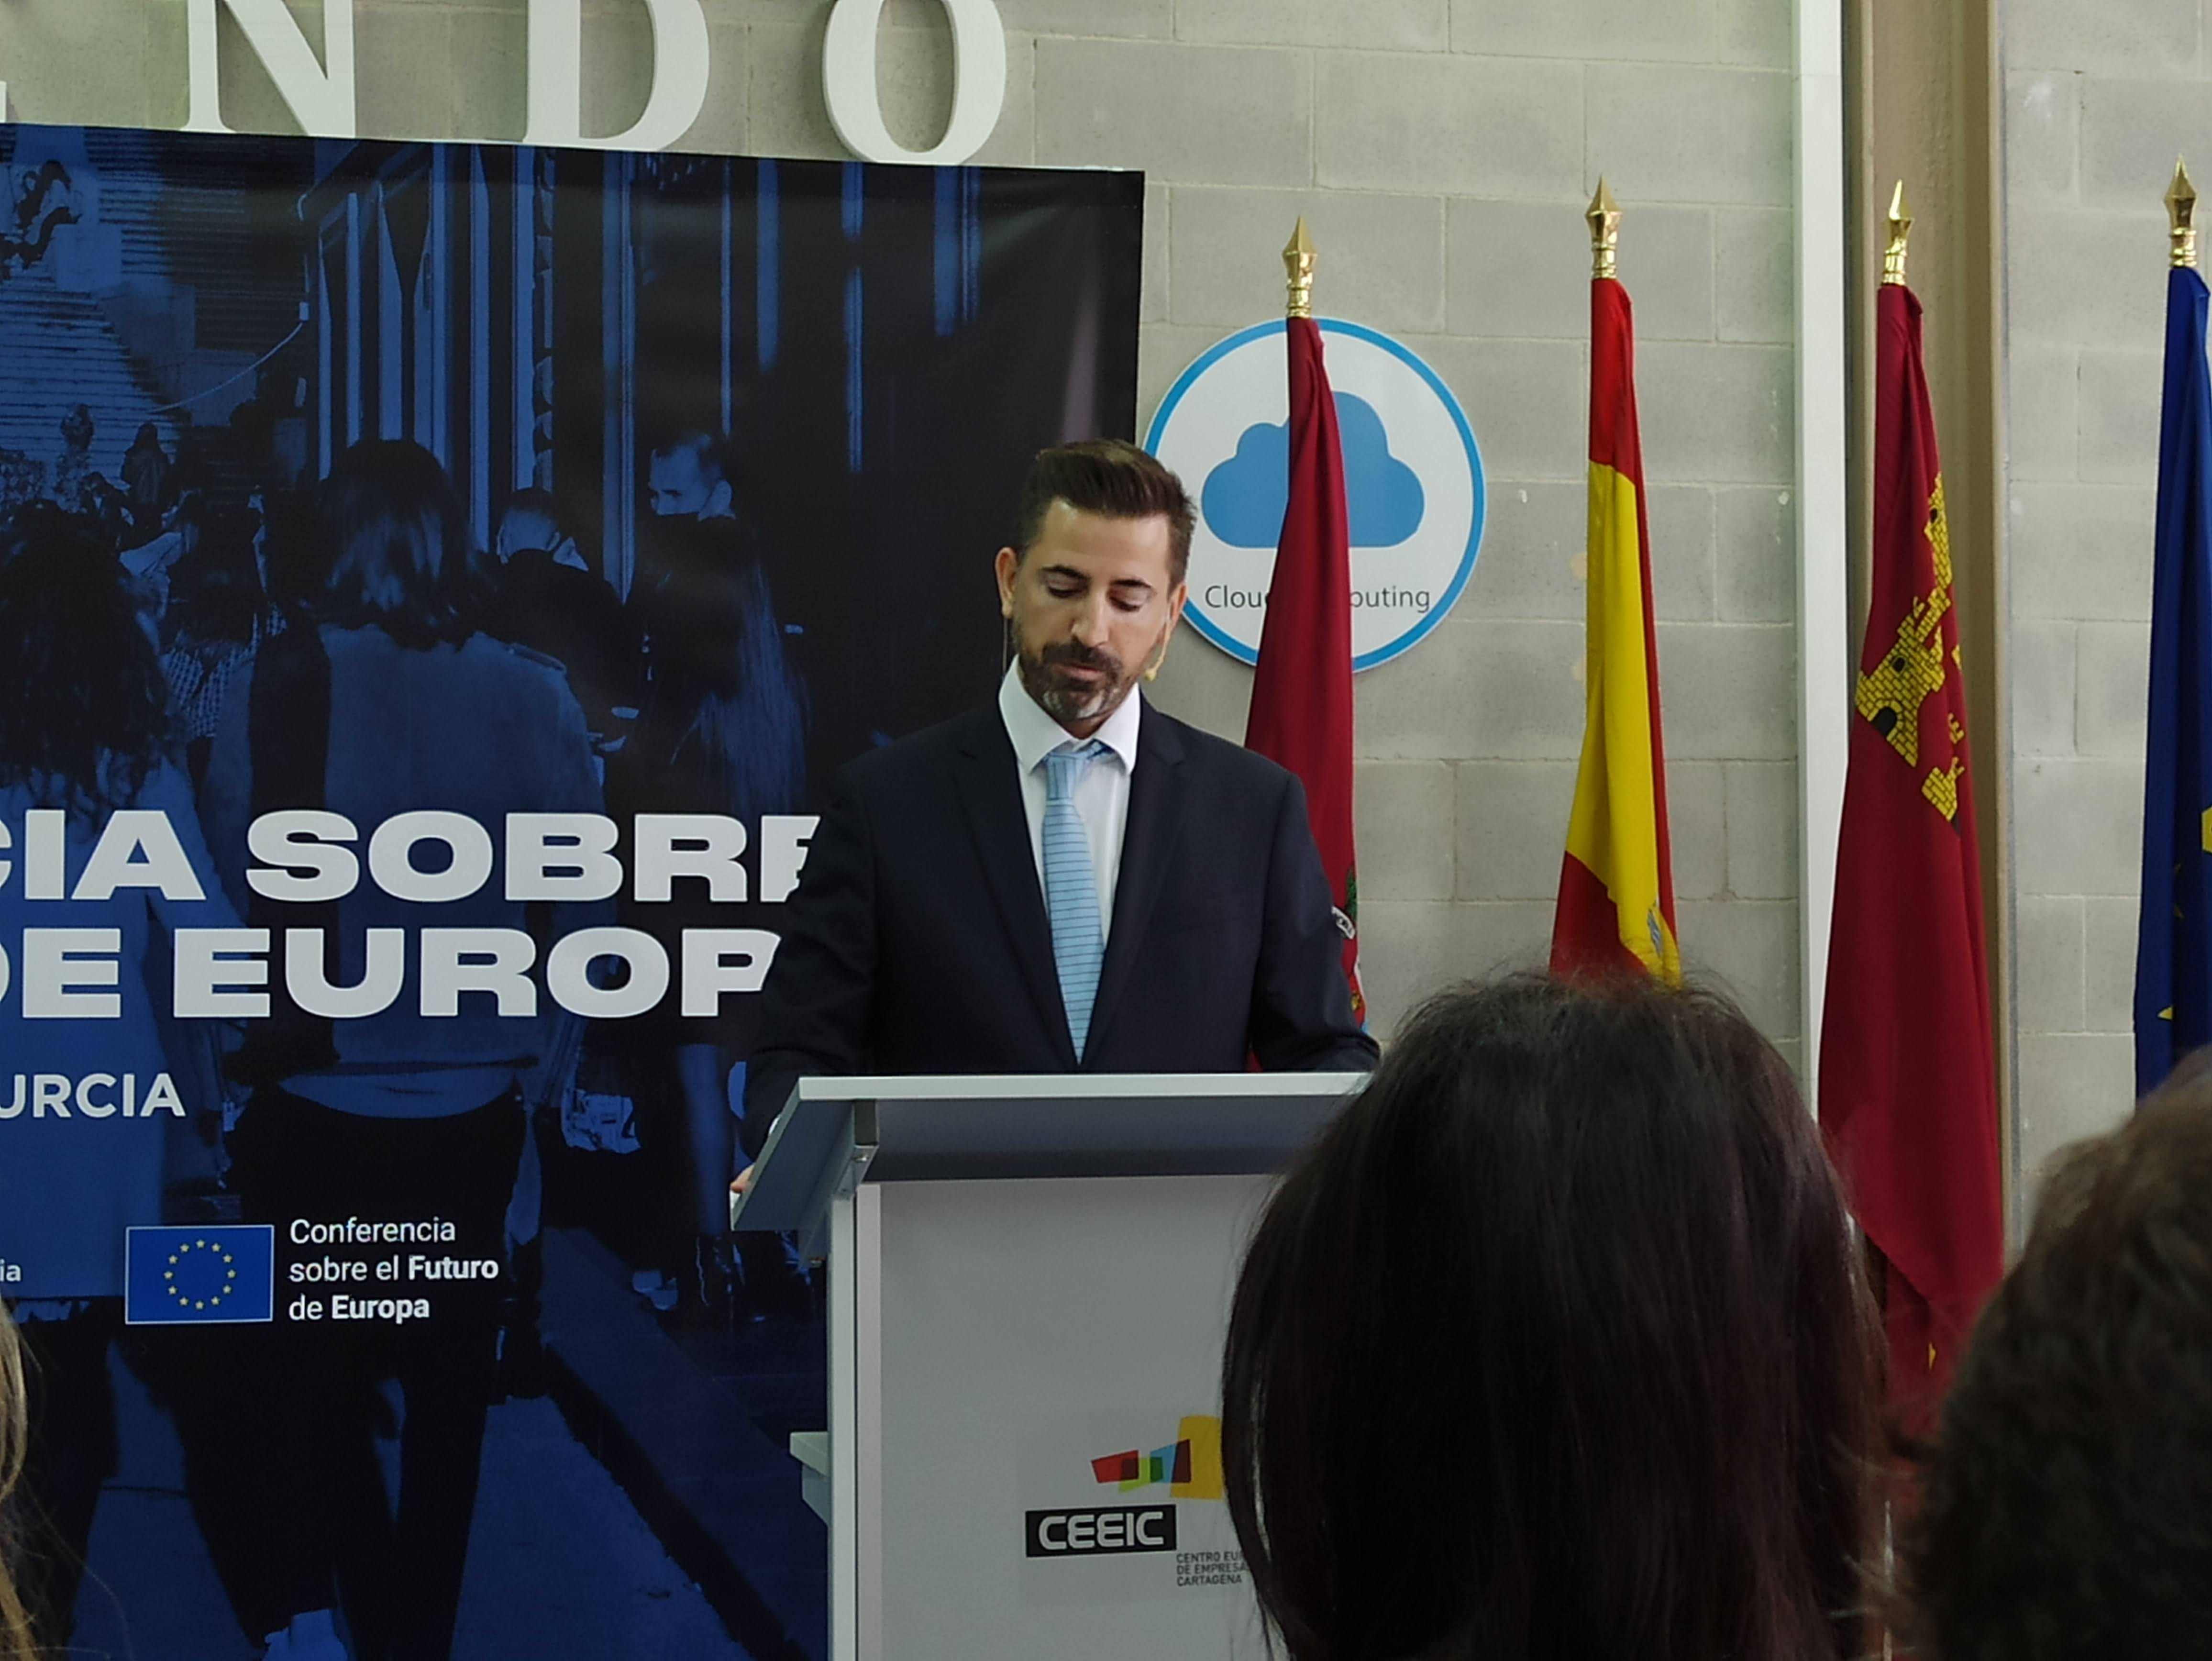 Adrian Zittelli, General de la Unión Europea de la Región de Murcia, durante su intervención en las jornadas